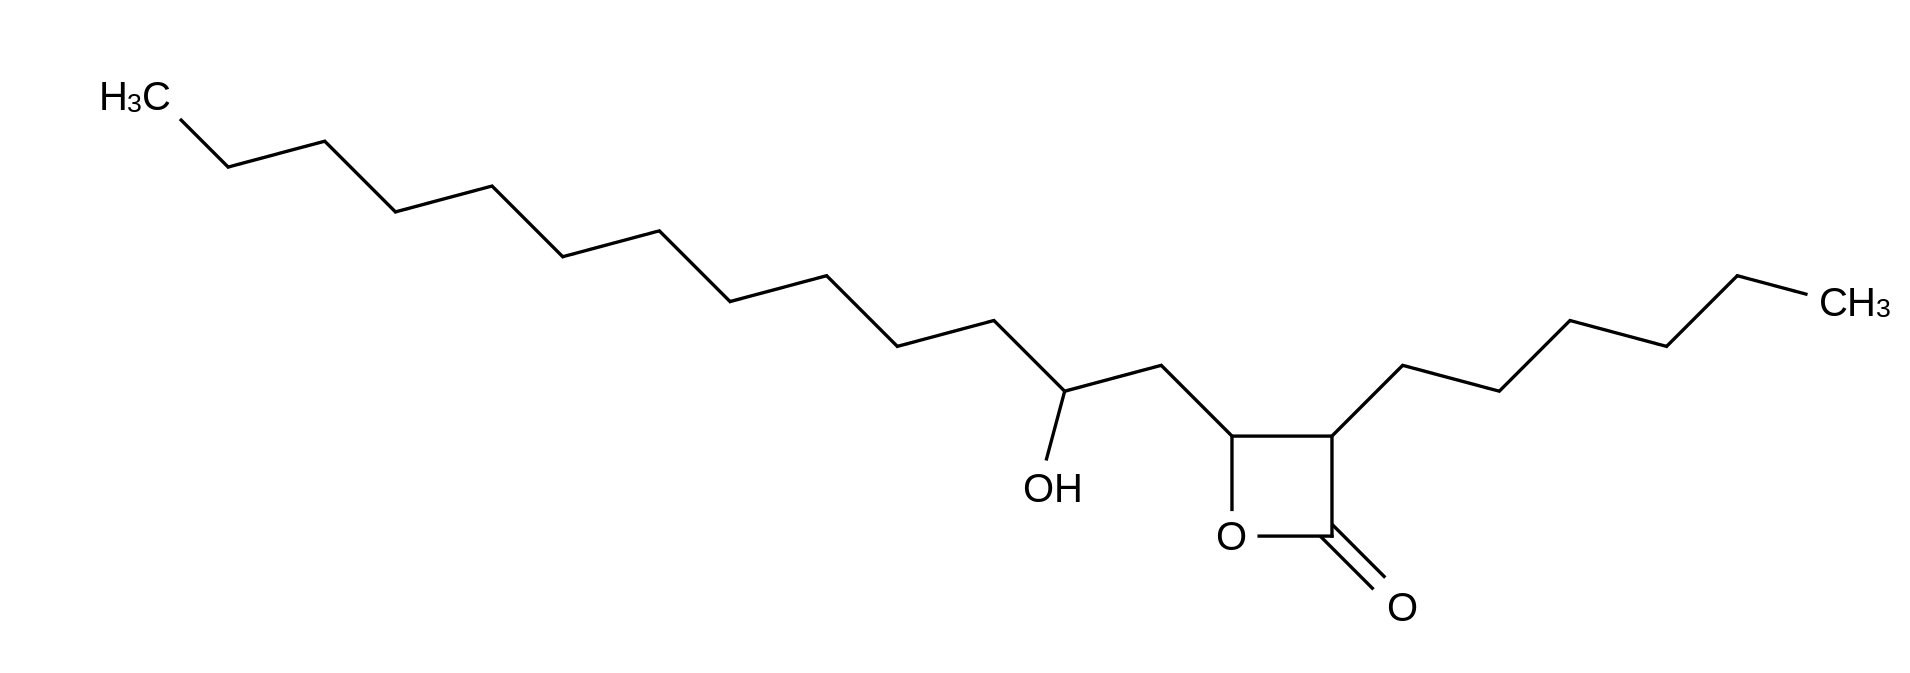 (3S,4S)-3-Hexyl-4-[(2R)-2-hydroxytridecyl]-2-oxetanone